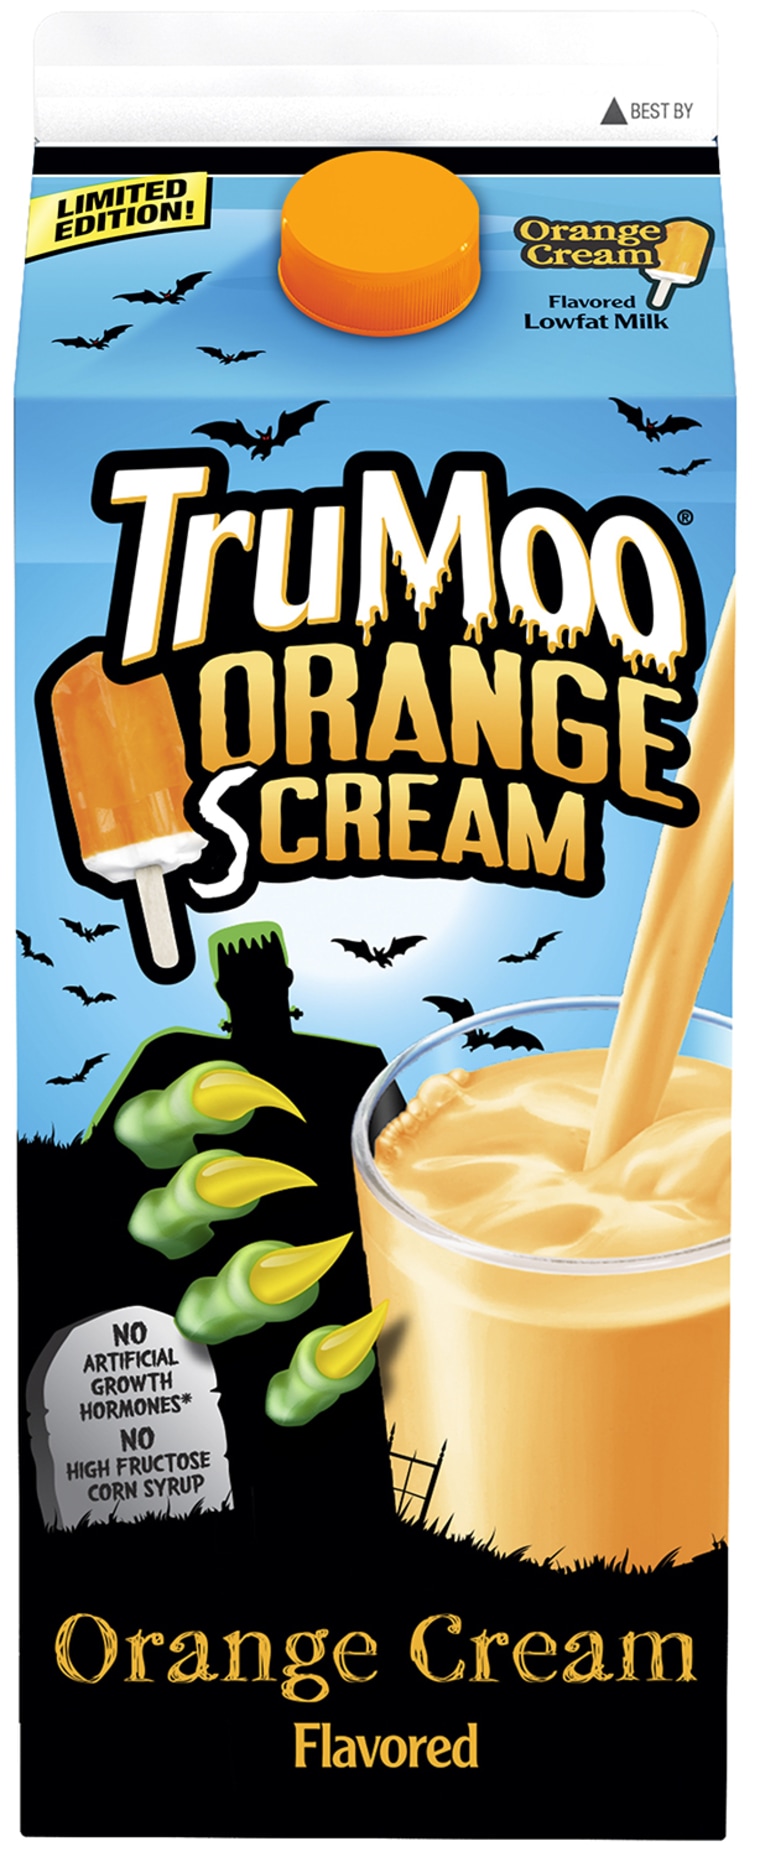 TruMoo Orange Scream milk